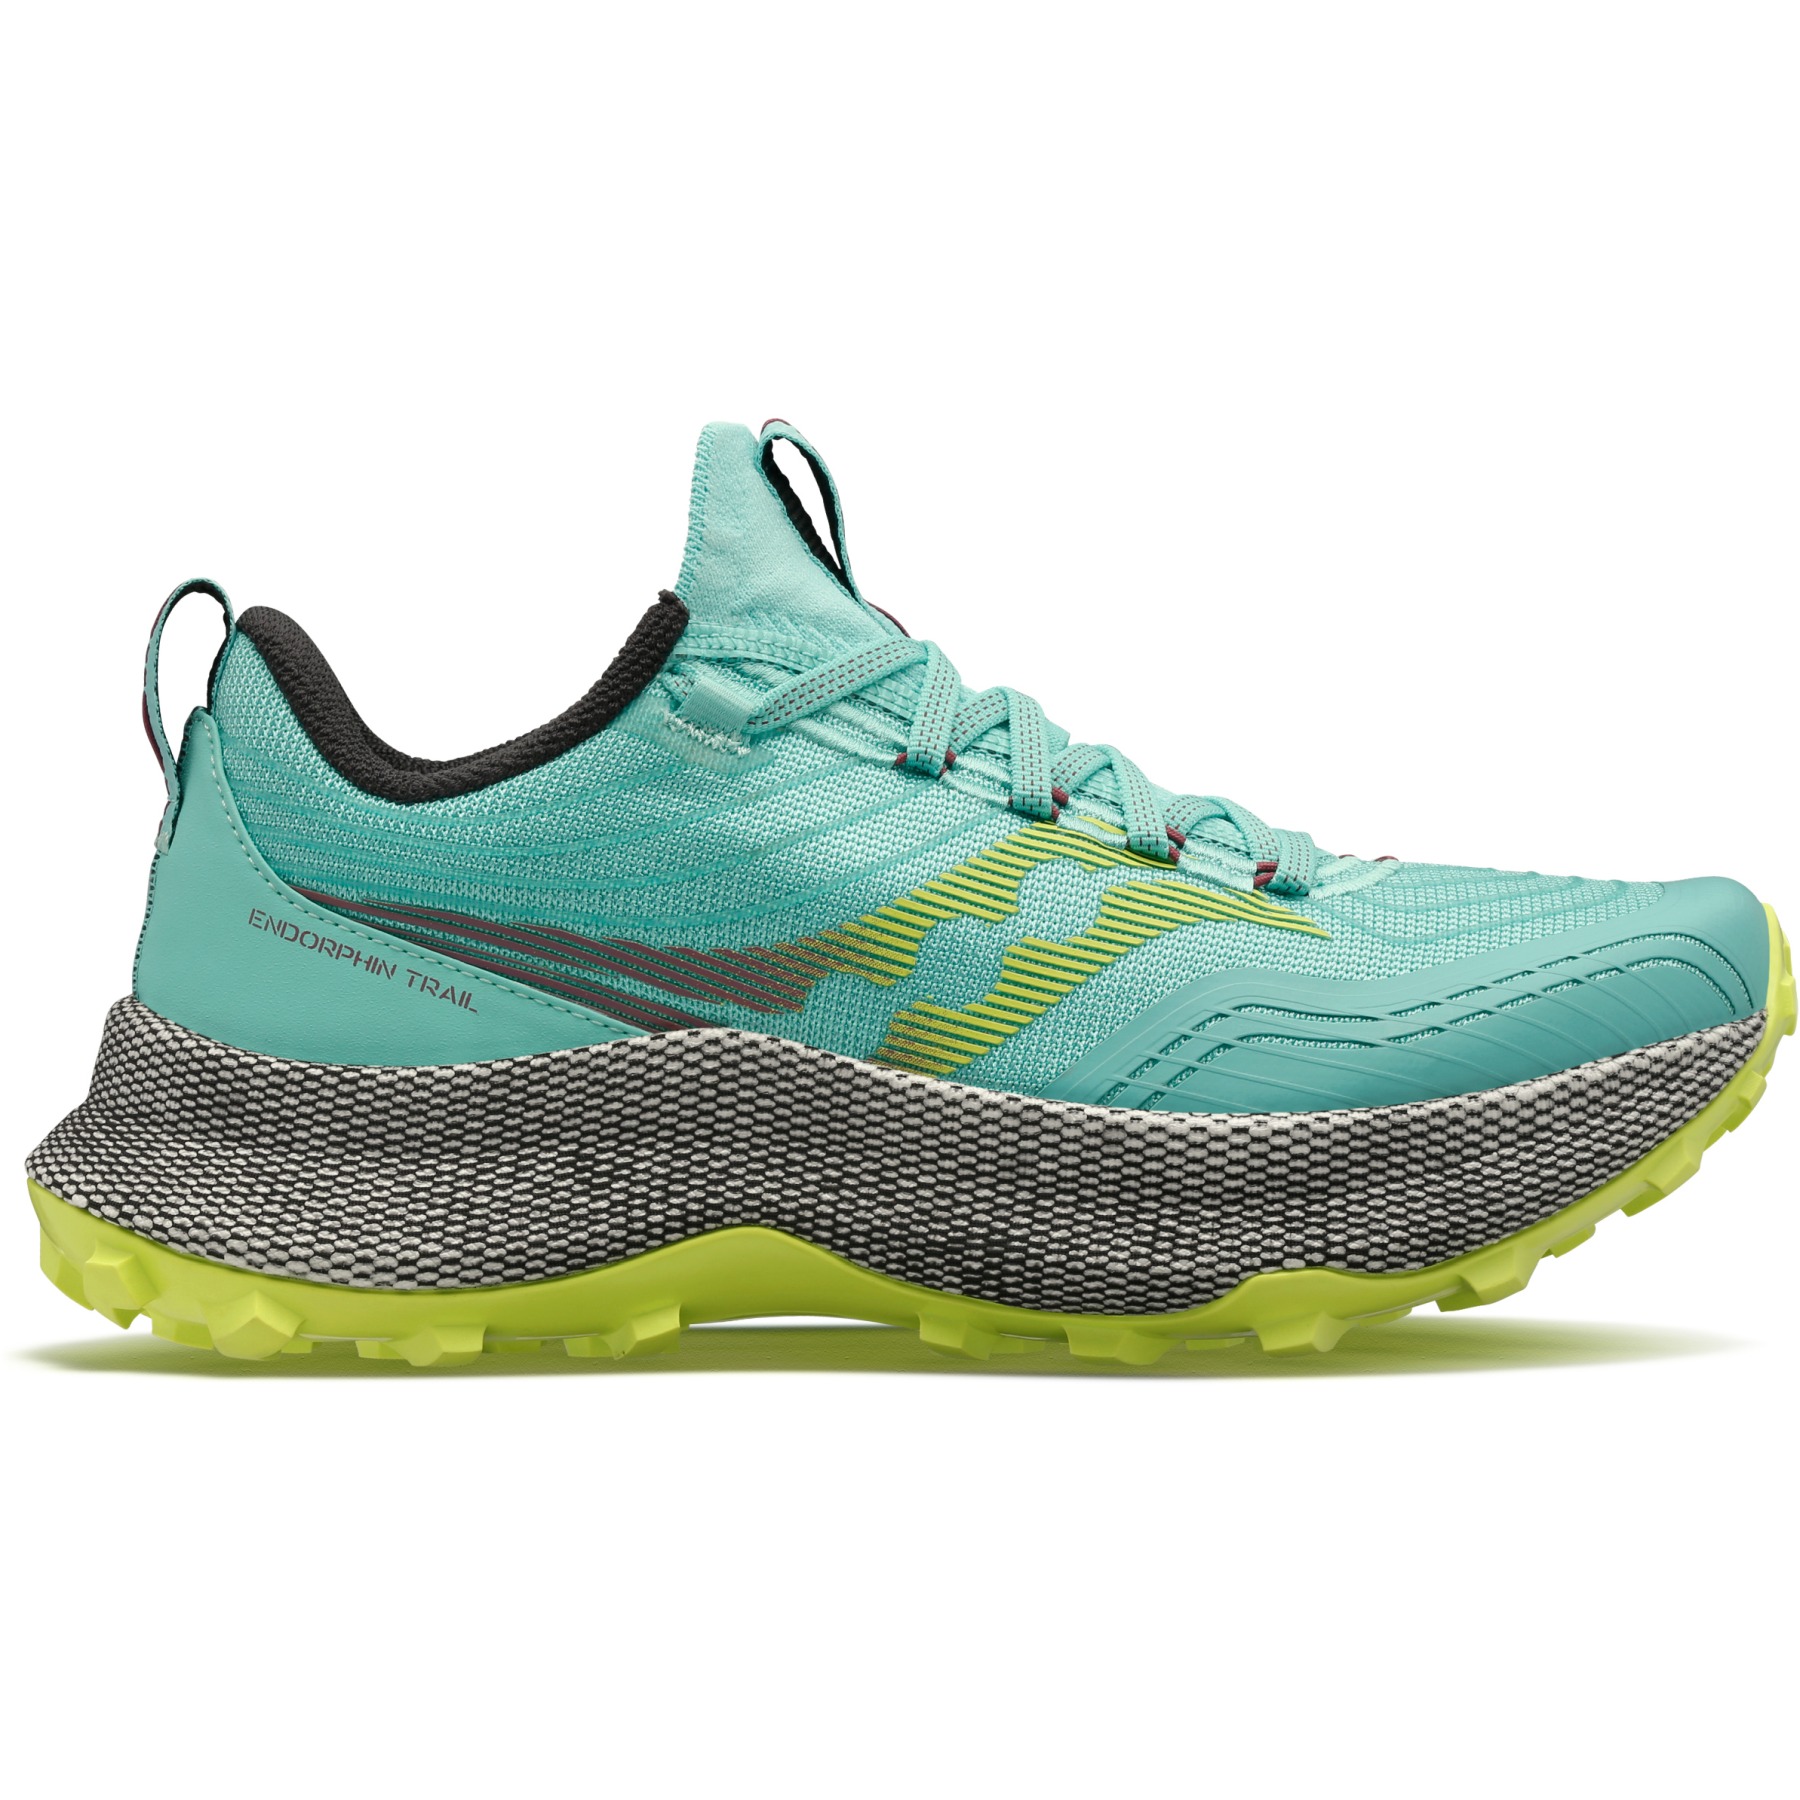 Produktbild von Saucony Endorphin Trail Damen Trailrunning-Schuhe - cool mint/acid